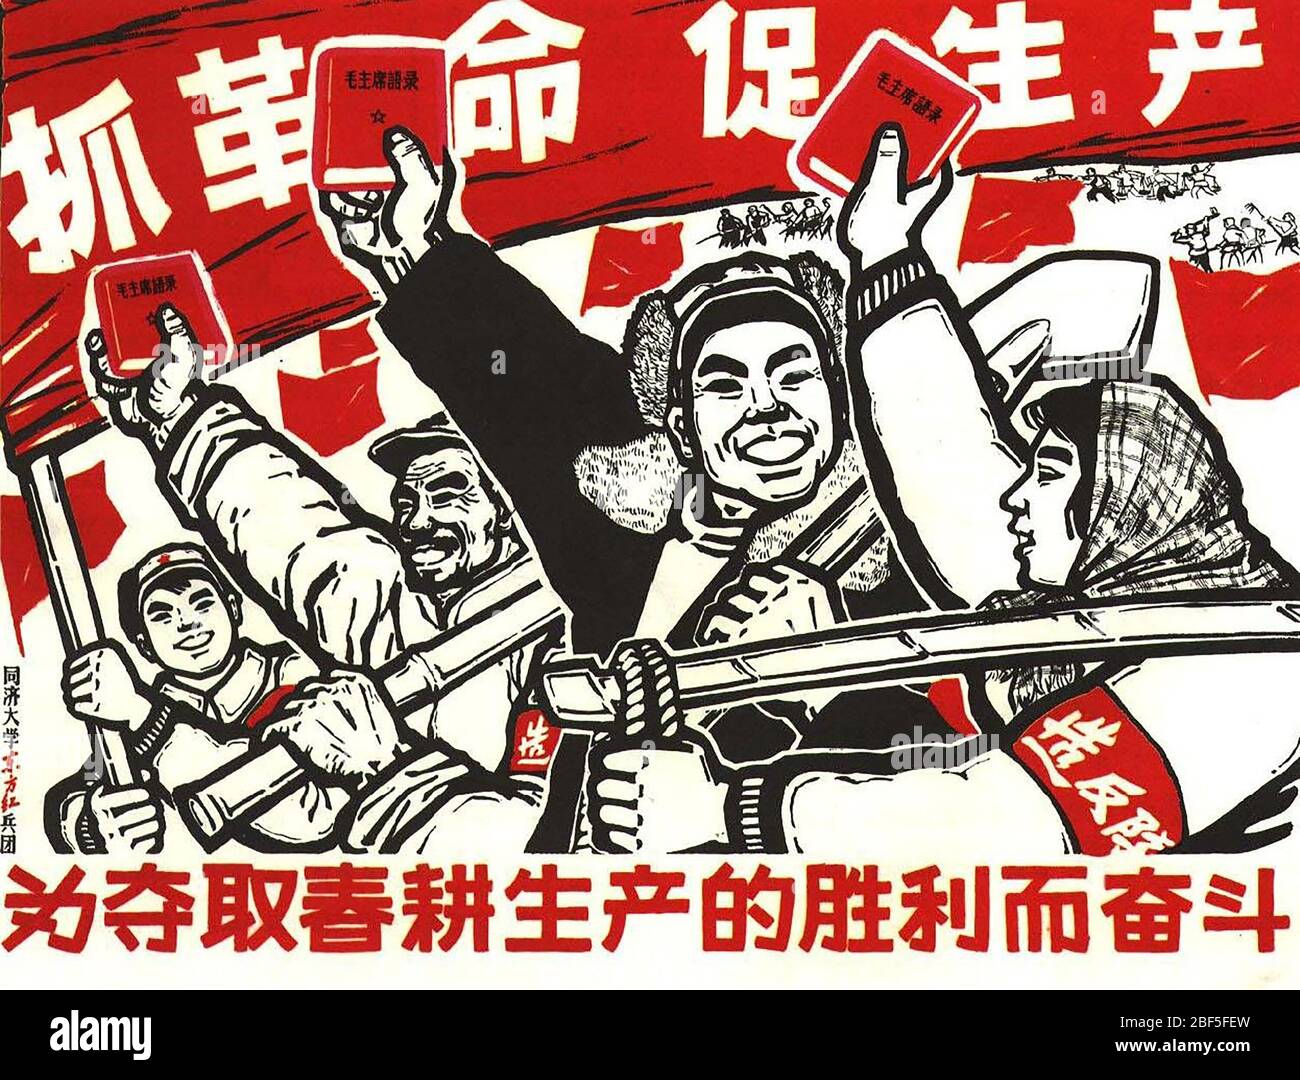 CITATIONS DU PRÉSIDENT MAO - le petit Livre rouge. Une affiche du Parti communiste chinois de 1964 annonçant le livre de Mao TSE-Tung. Banque D'Images